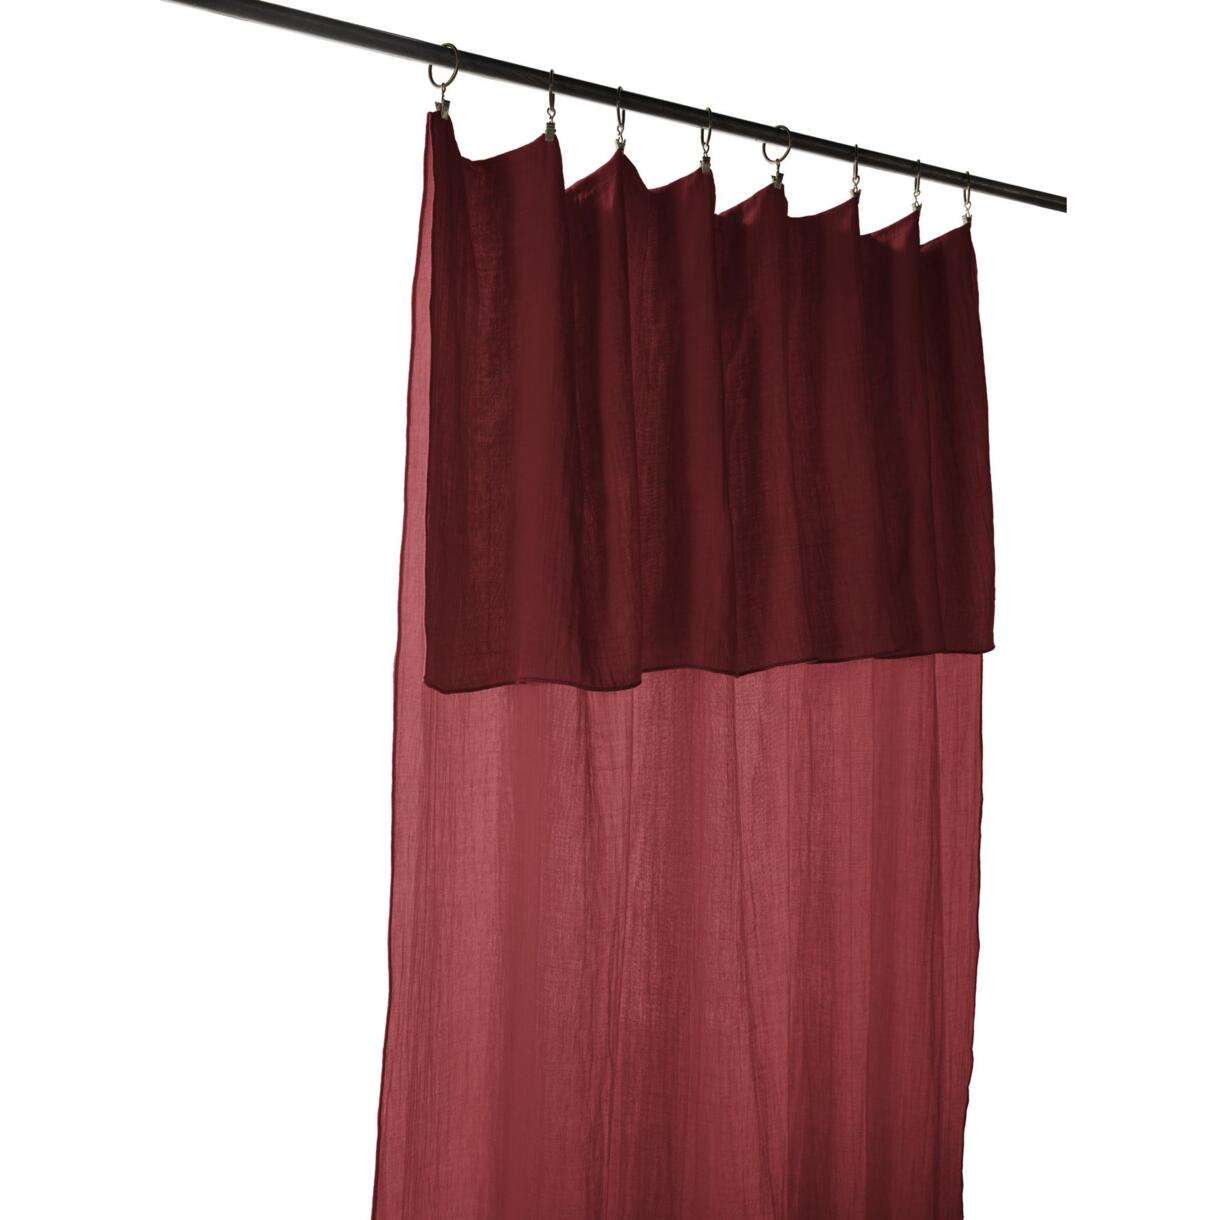 Höhenverstellbarer Vorhang aus Baumwoll-Gaze (140 x max. 300 cm) Gaïa Weinrot 6